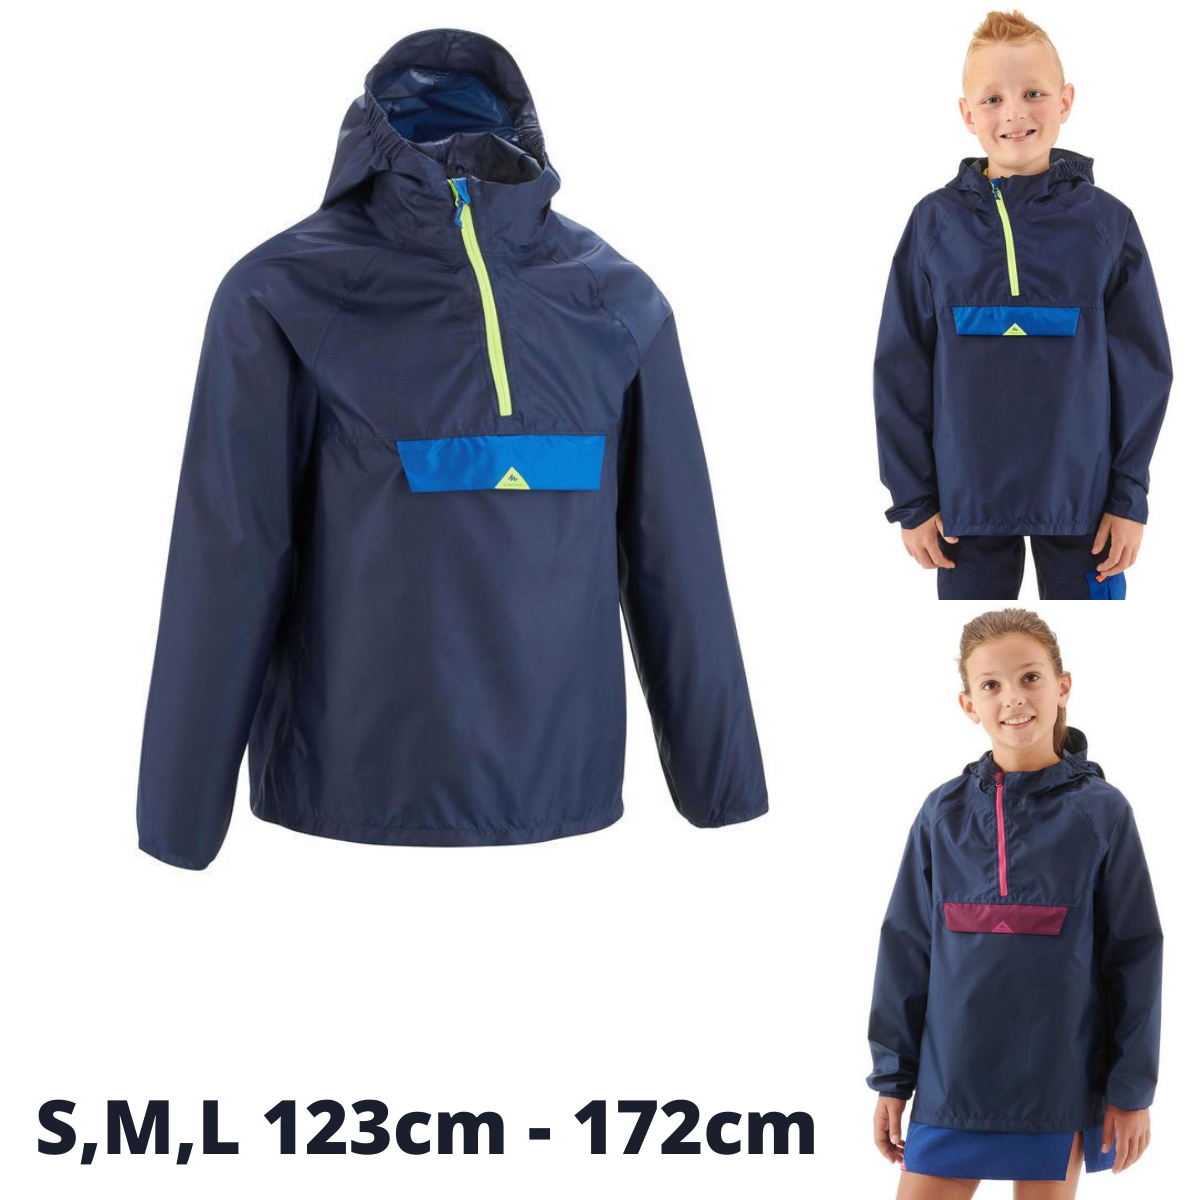 เสื้อแจ็คเก็ตเด็กมีคุณสมบัติกันฝนสำหรับใส่เดินป่ารุ่น MH100 (สีกรมท่า/ชมพู) Children